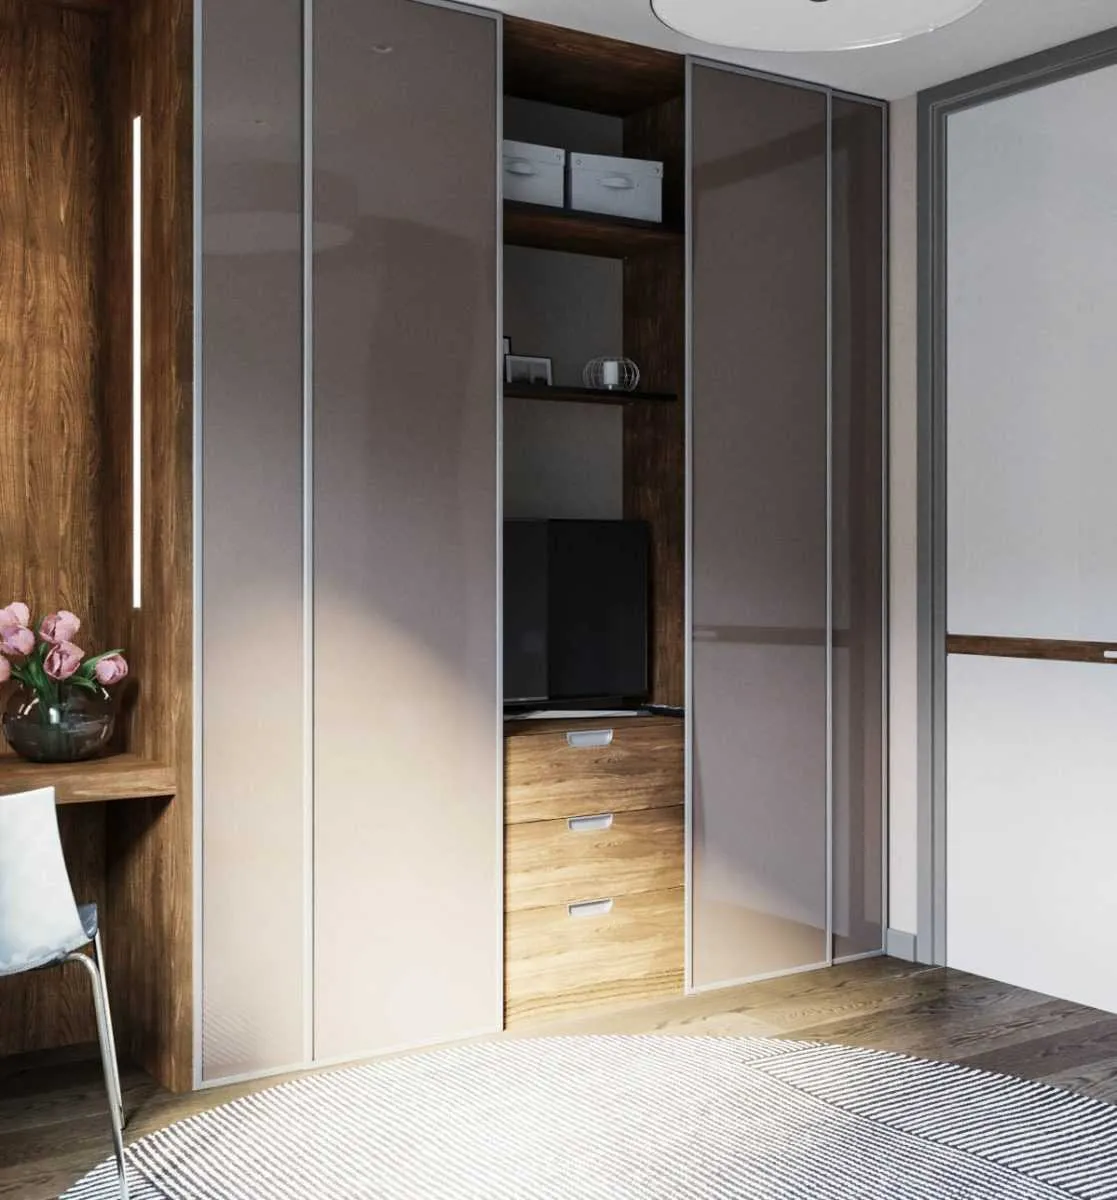 Шкафы в интерьере: фото лучших моделей и современного дизайна. Примеры идеального сочетания мебели по цвету и стилю